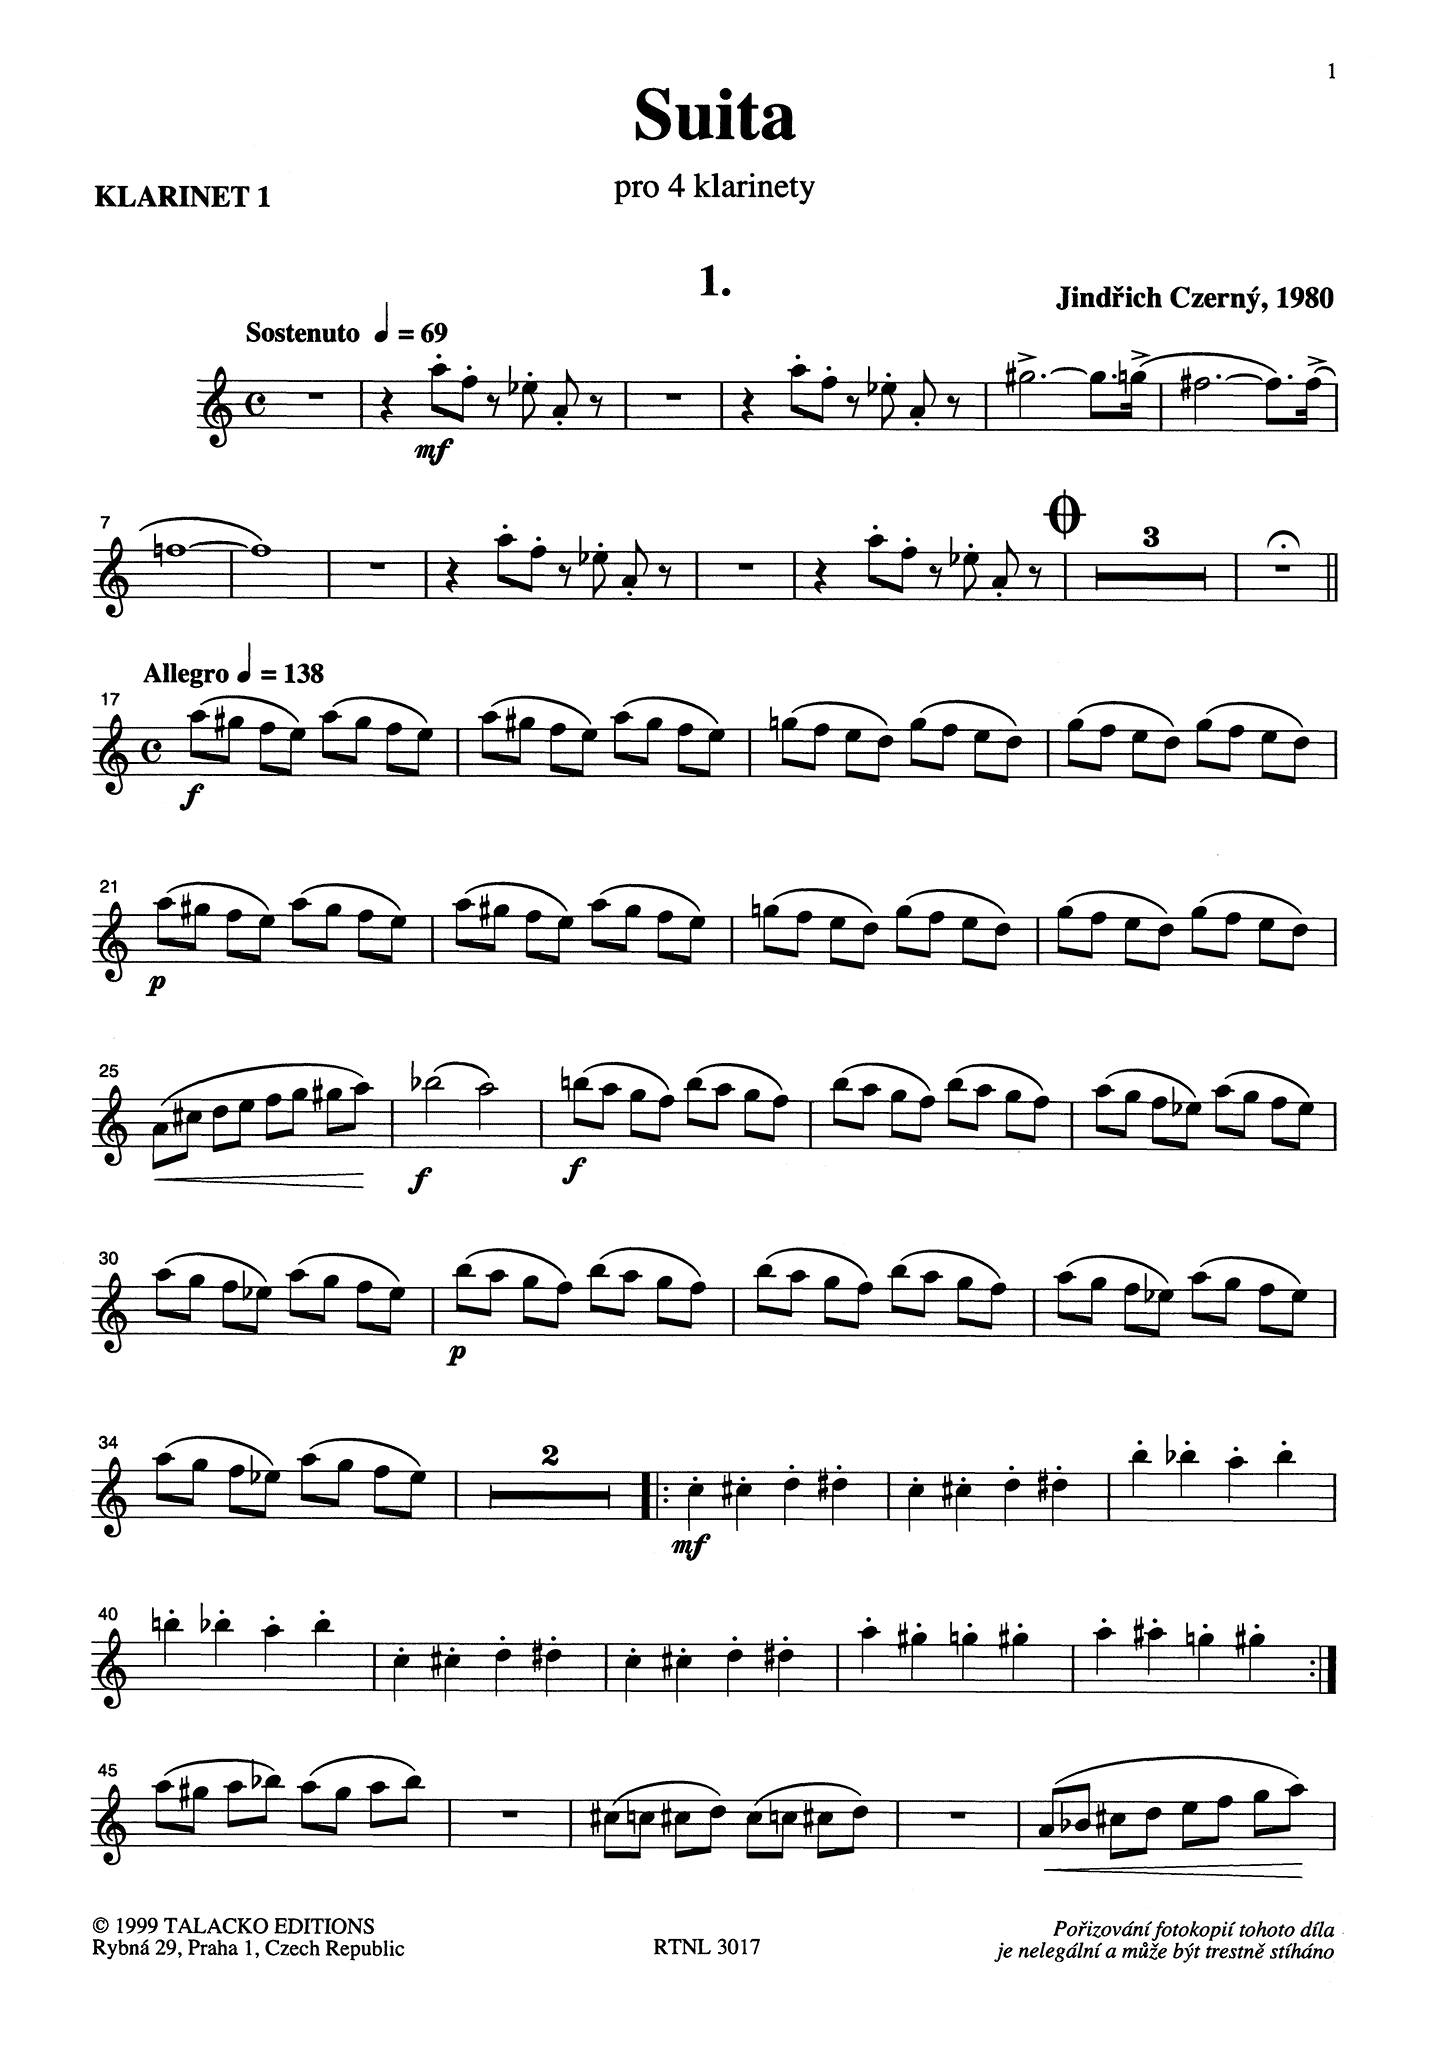 Czerný Suite First clarinet part